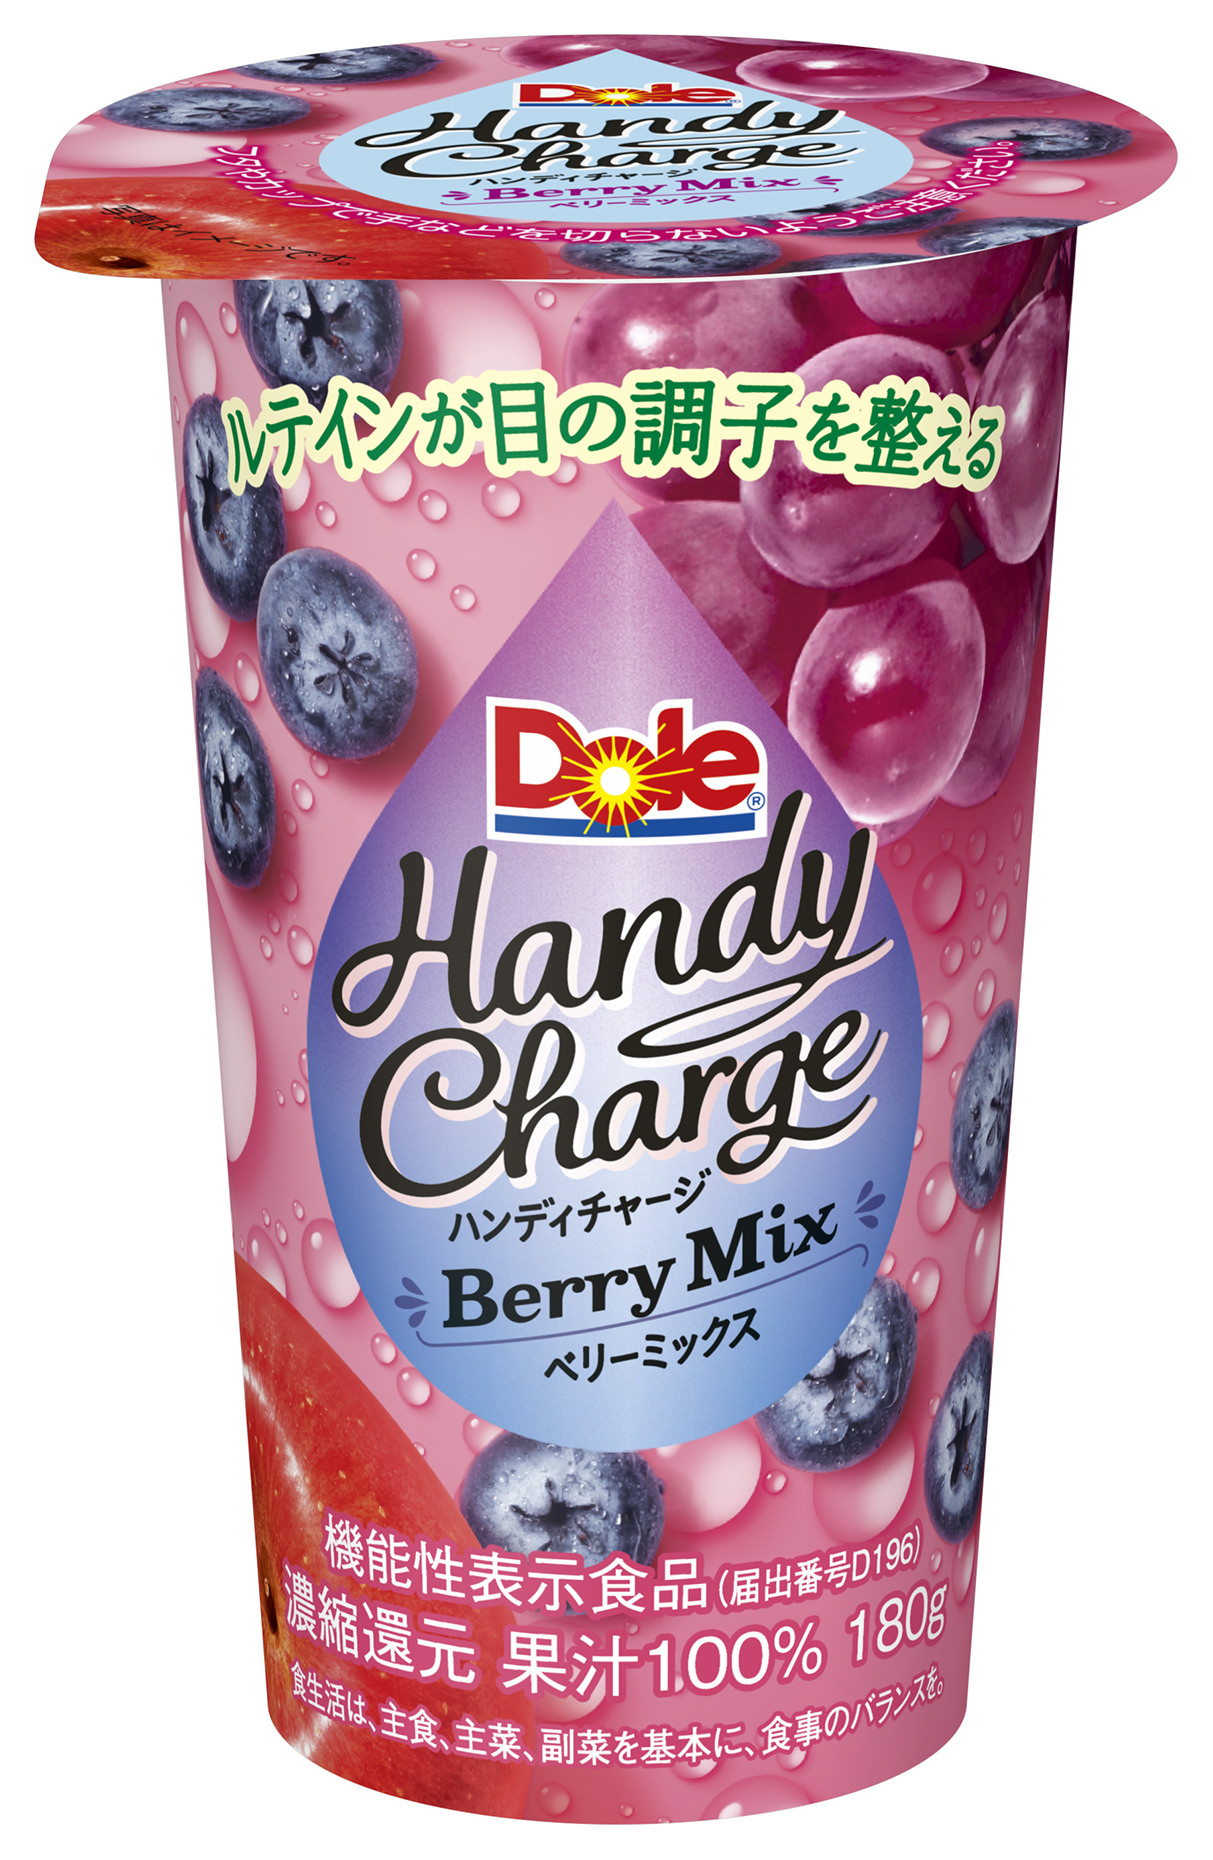 【雪印メグミルク】

『 Dole(R) Handy(ハンディ) Charge(チャージ) Berry(ベリー) Mix(ミックス)』
『 Dole(R) Handy(ハンディ) Charge(チャージ) Lemon(レモン) Mix(ミックス)』

2019年2月19日、3月19日より全国にて新発売